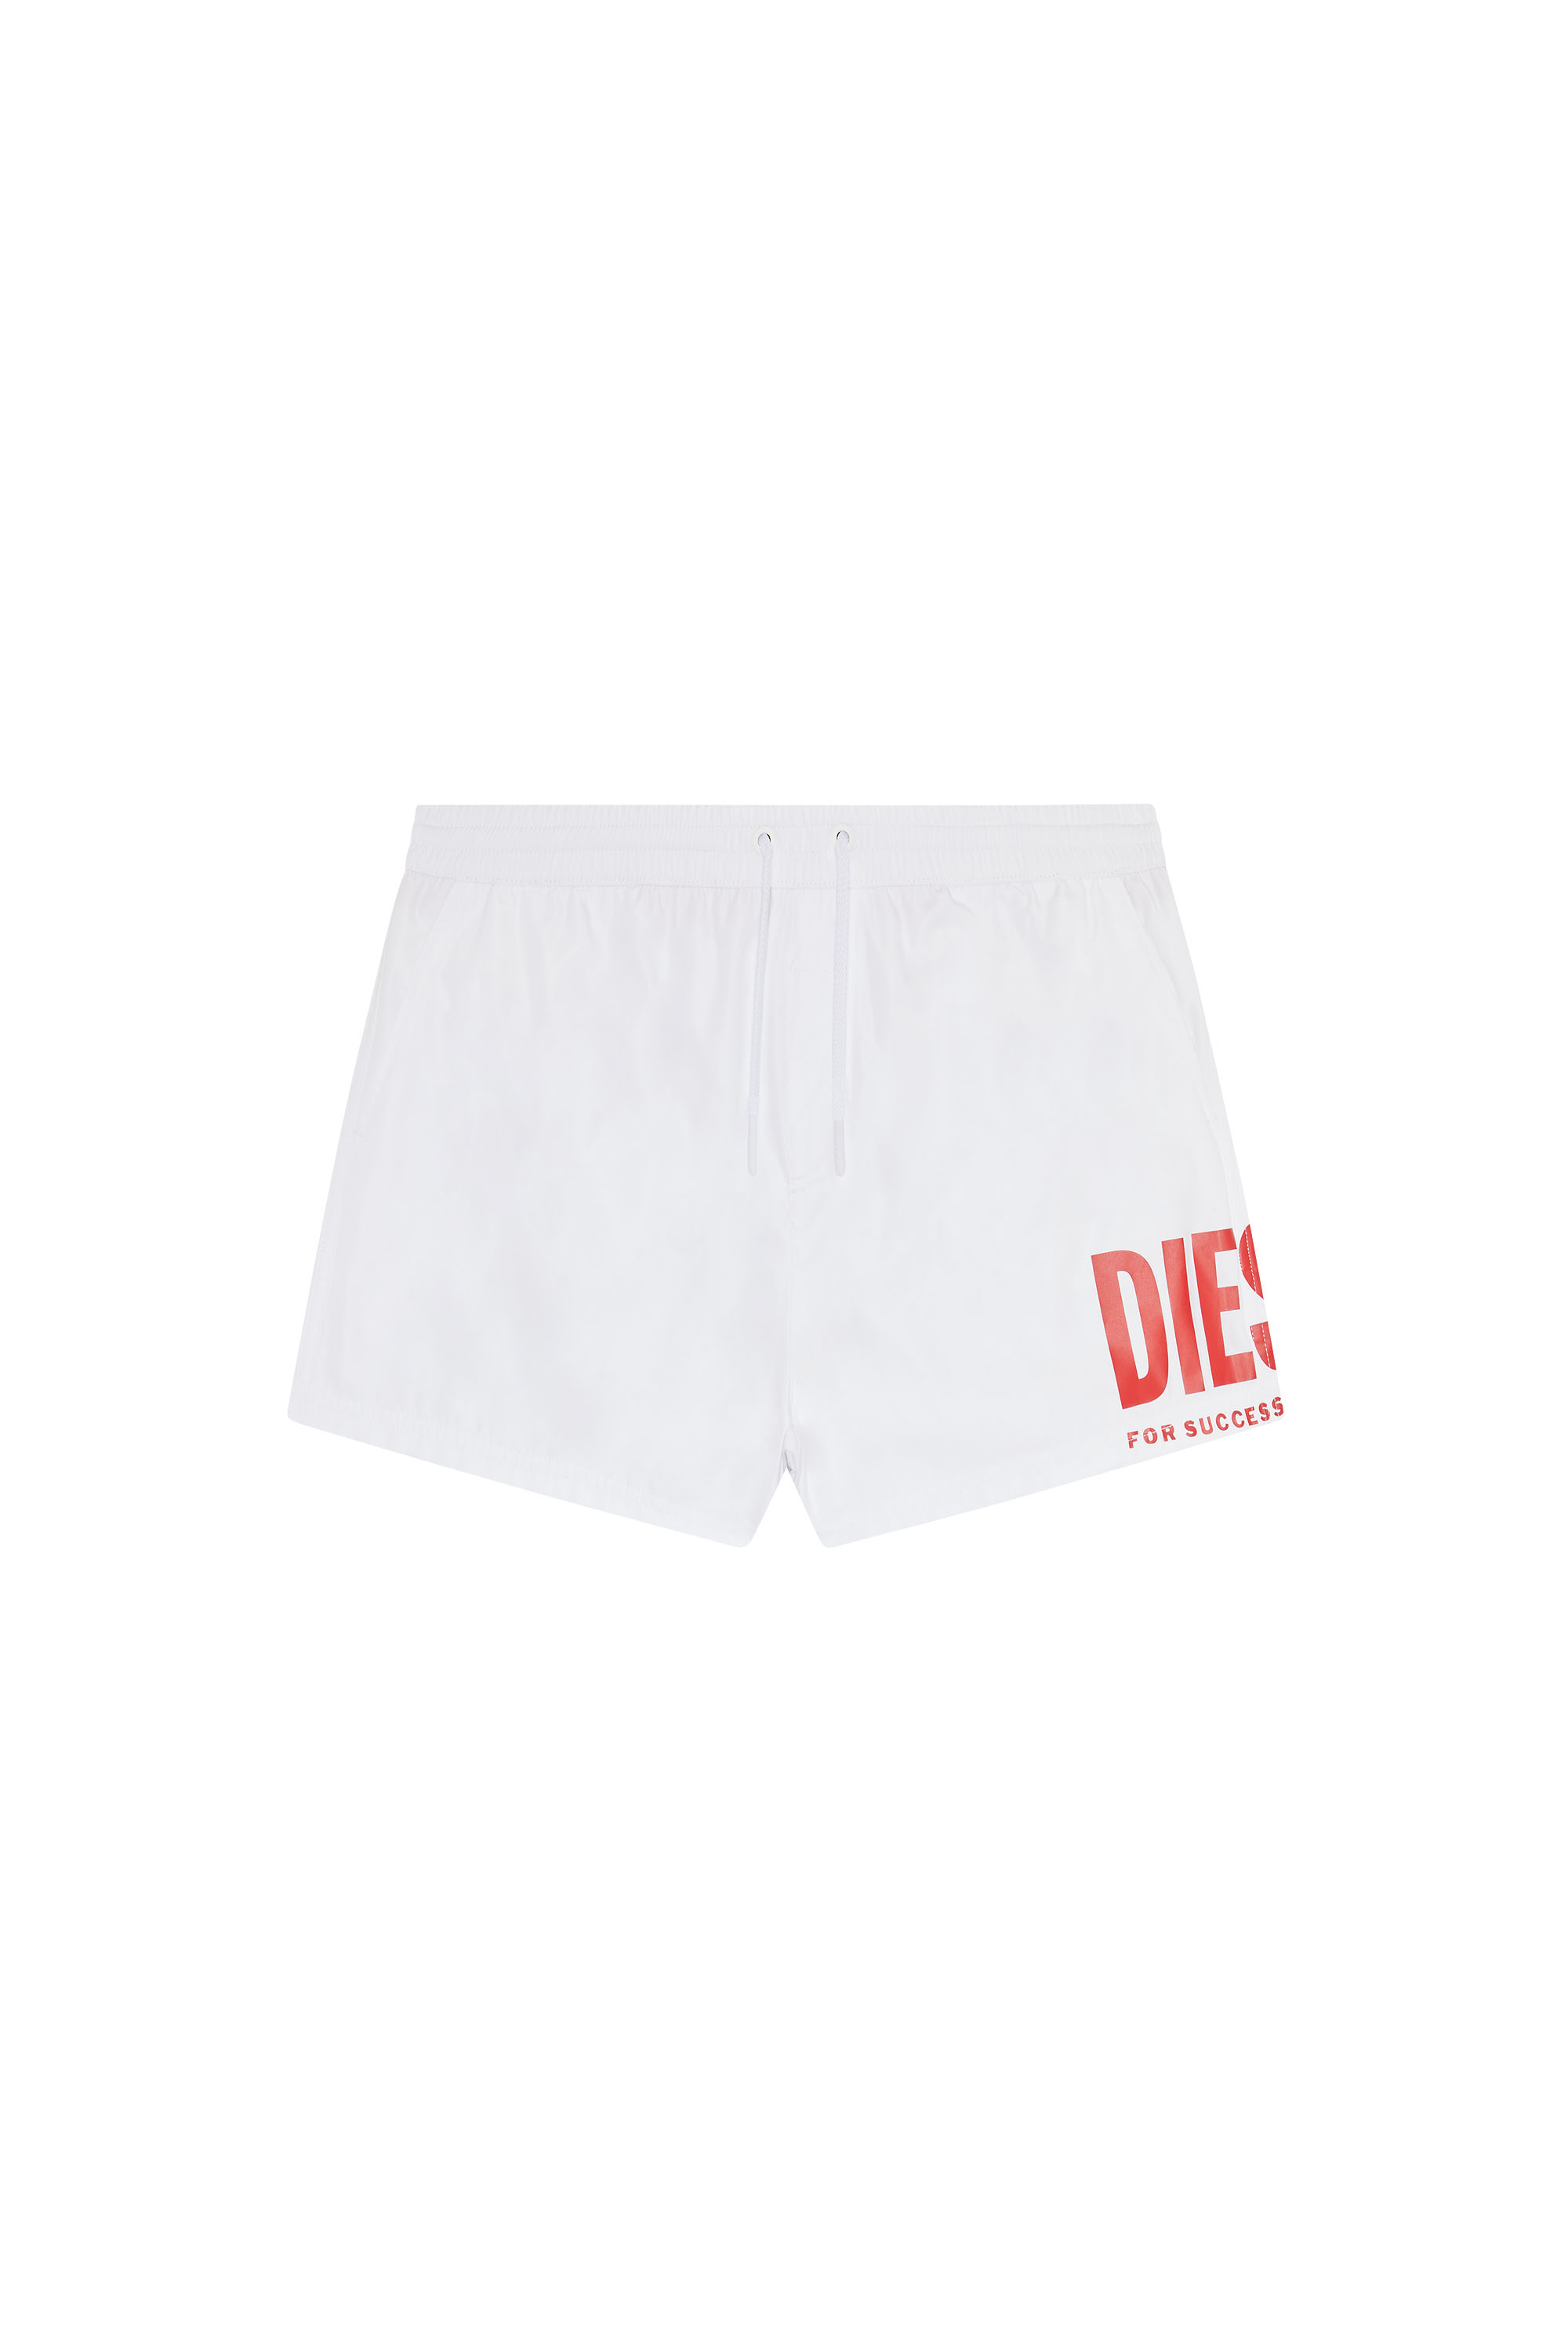 Diesel - Bade-Shorts mit großem Logo-Print - Badeshorts - Herren - Weiss